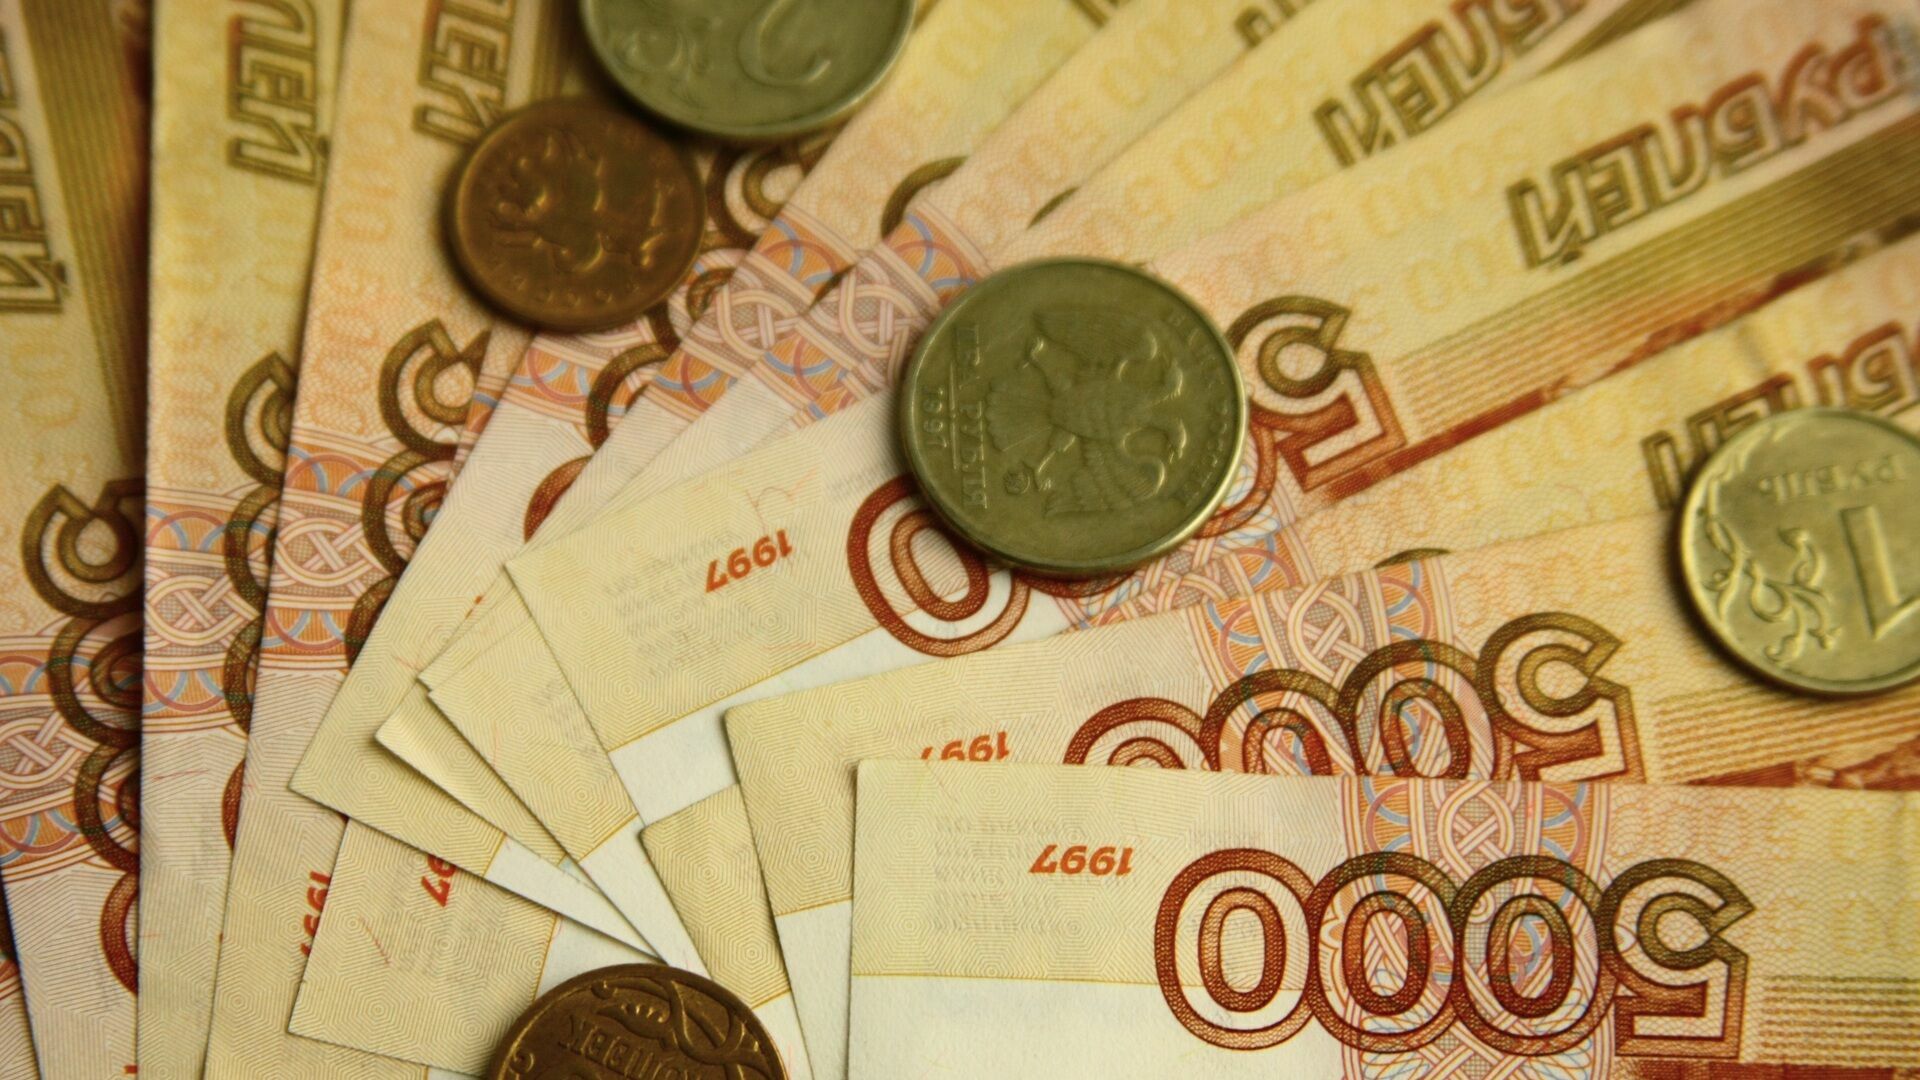 В краевом тубдиспансере похитили 100 миллионов рублей. Возможная версия вывода денег